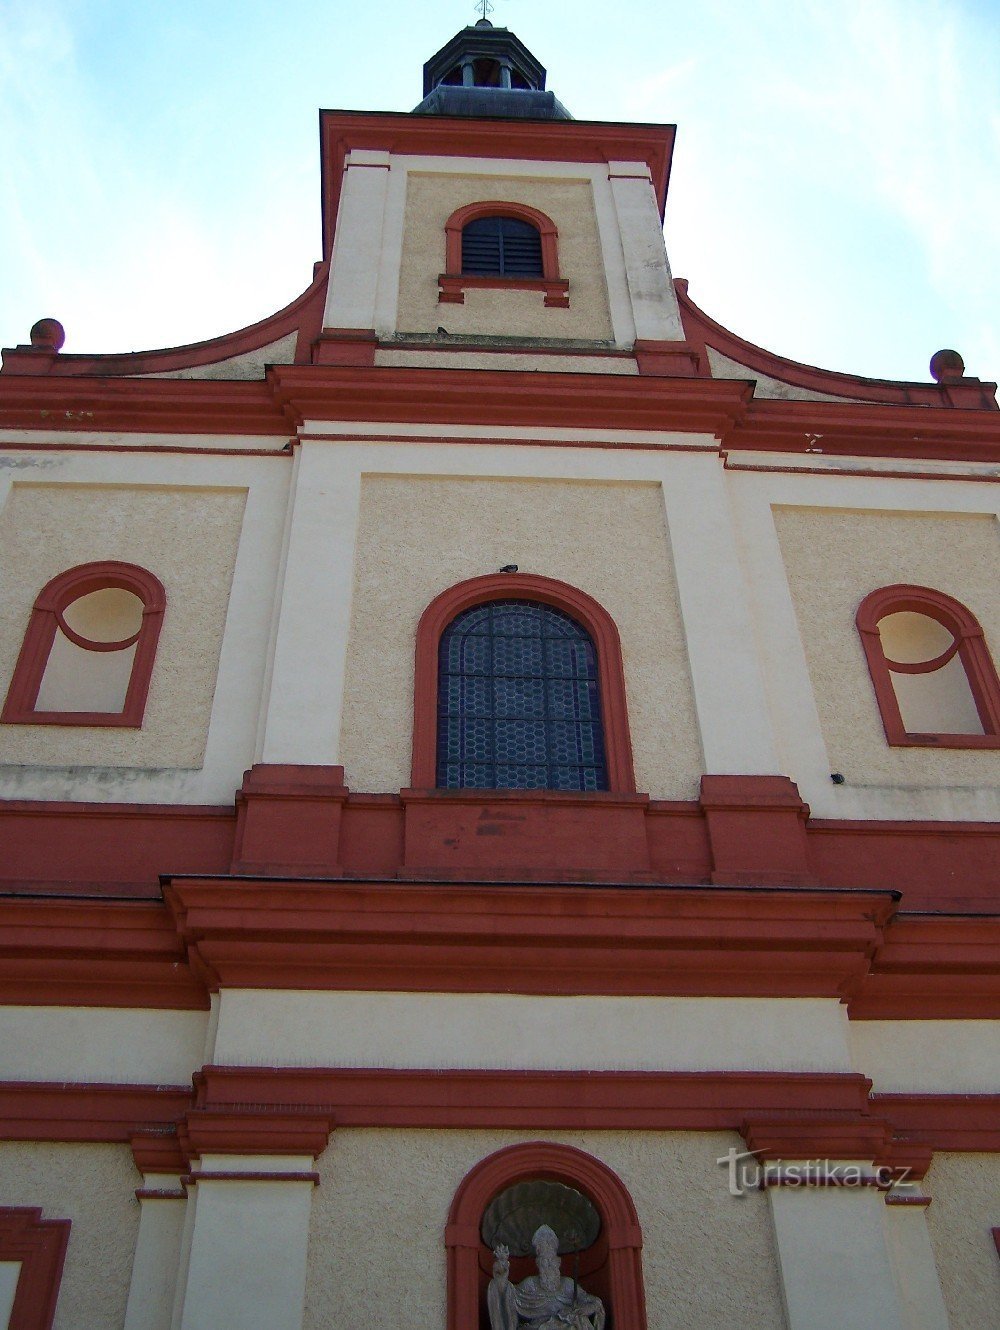 Vrchlabí - fachada da igreja do mosteiro de St. Agostinho